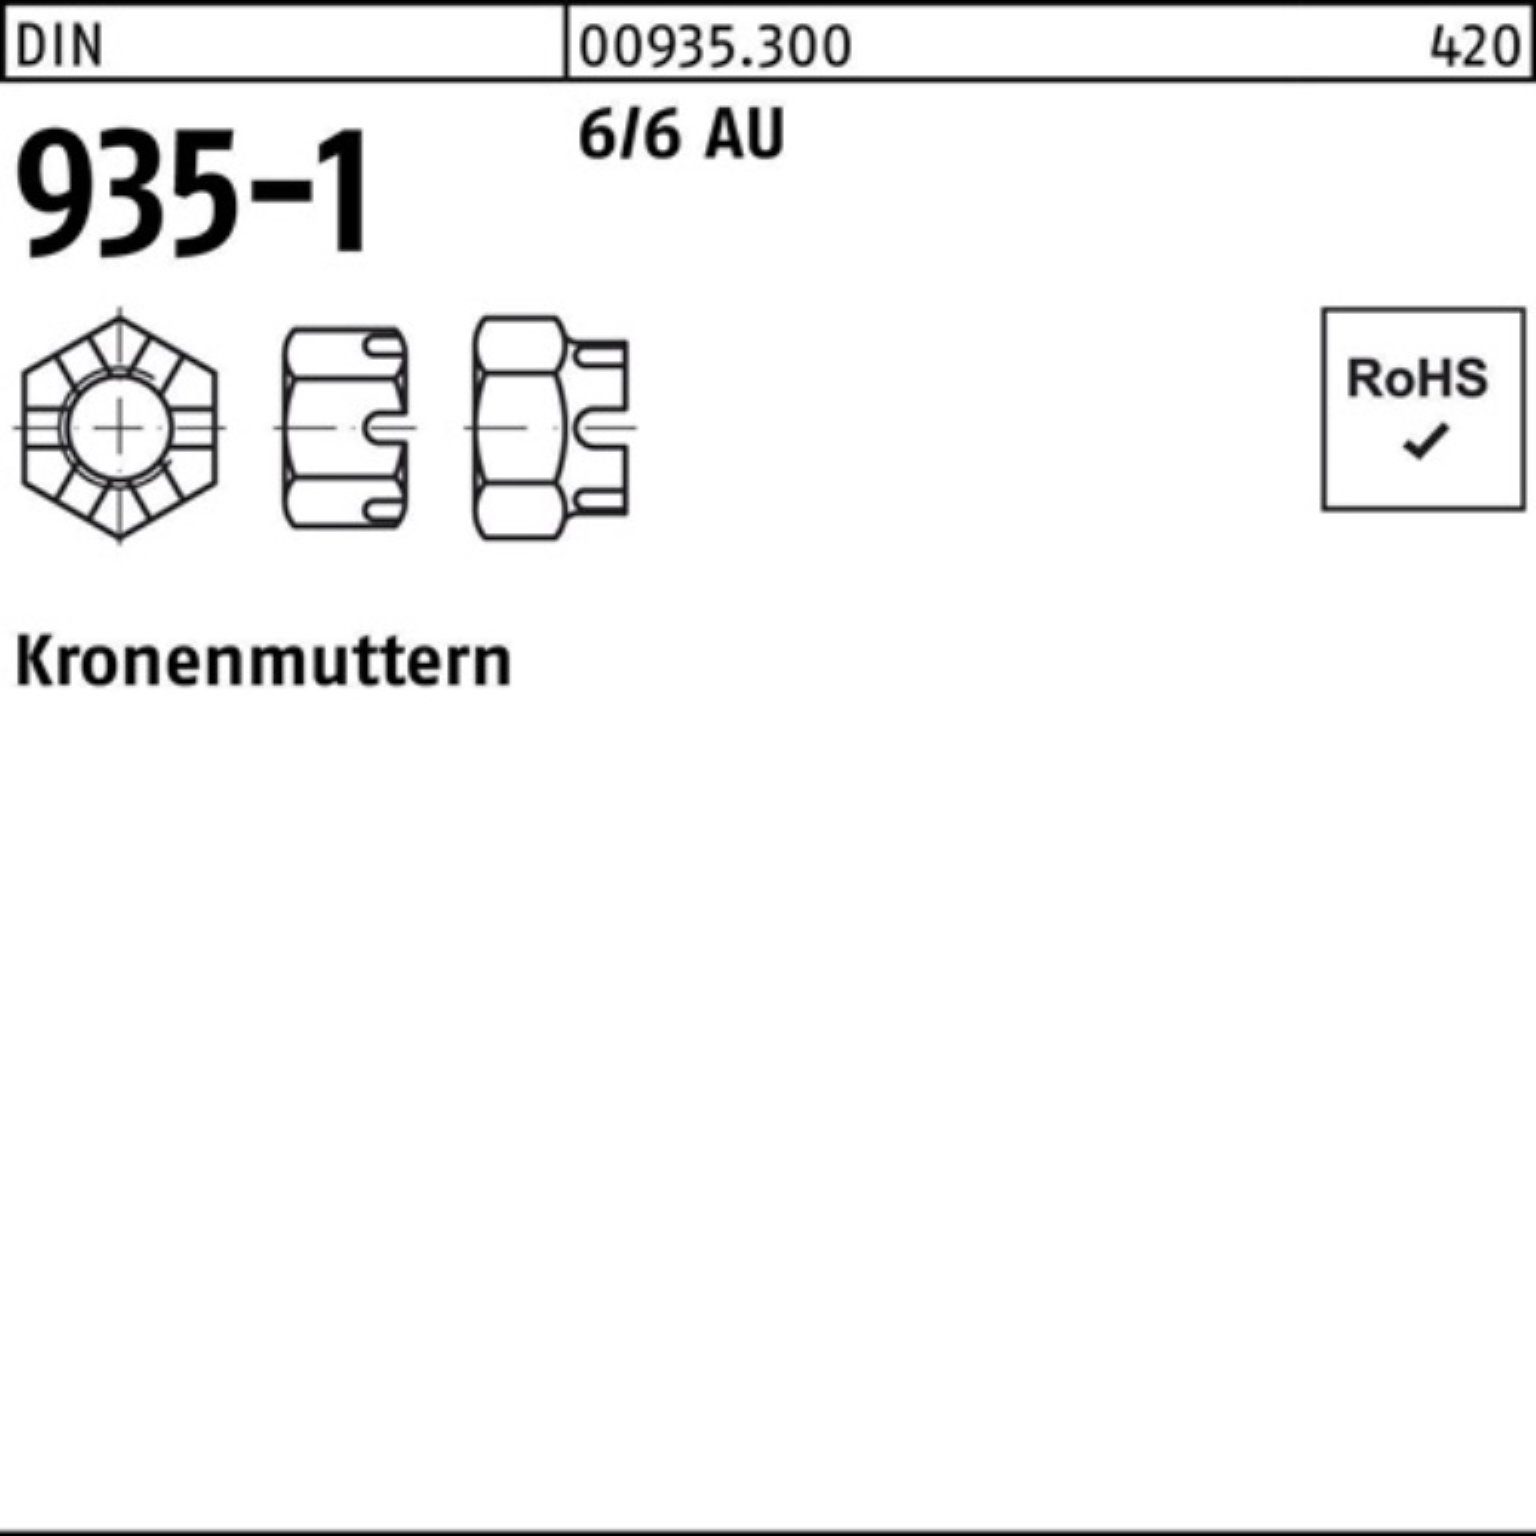 Reyher Kronenmutter 100er Pack Kronenmutter DIN 935-1 M8 6/6 Automatenstahl 100 Stück DIN